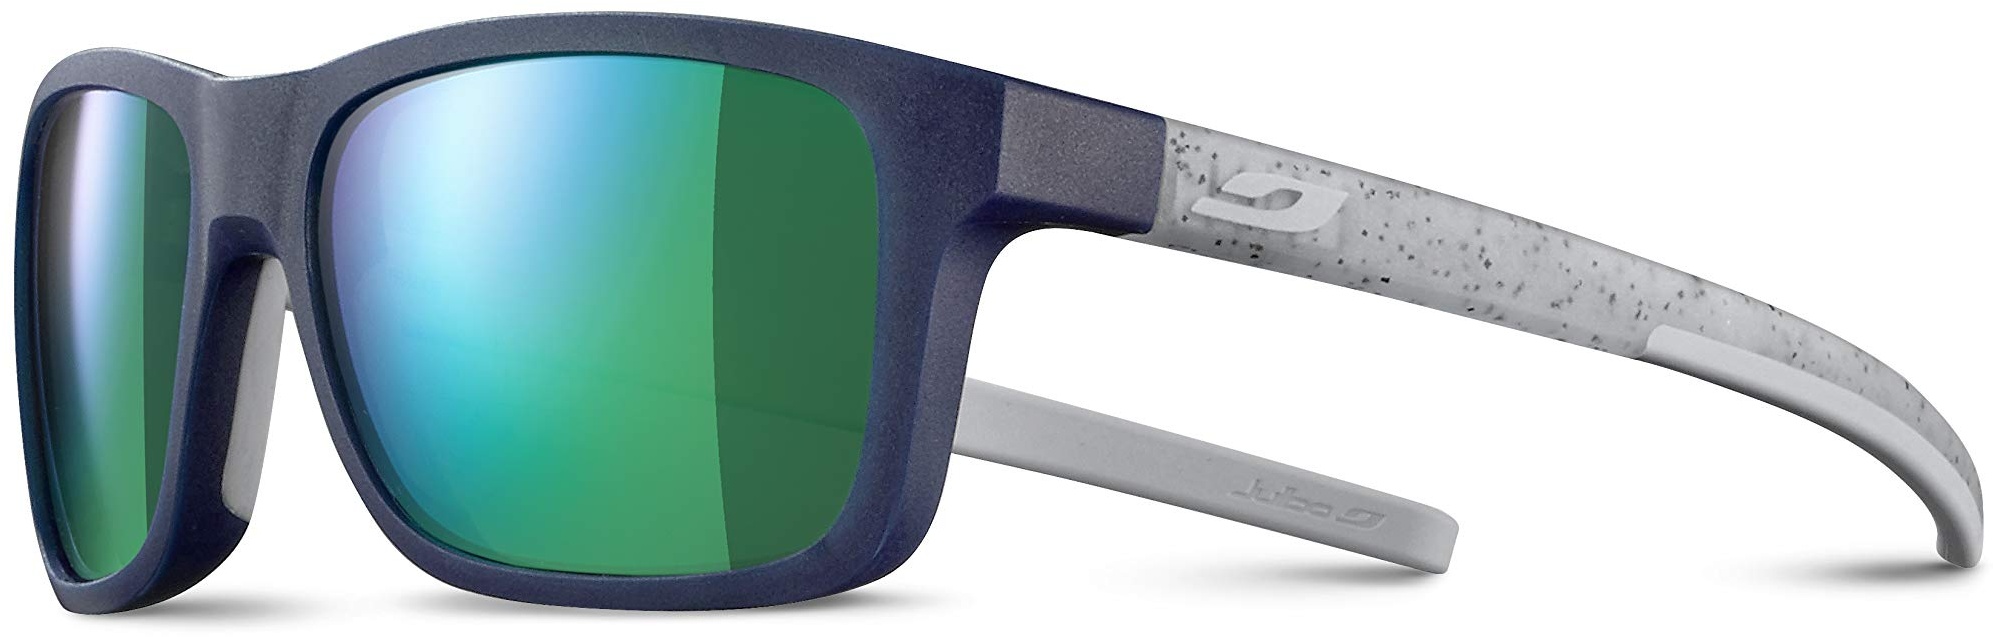 Julbo Line Jungen-Sonnenbrille, Blau/Grau Pailletten, FR: XXS (Größe Hersteller: 5-8 Jahre)